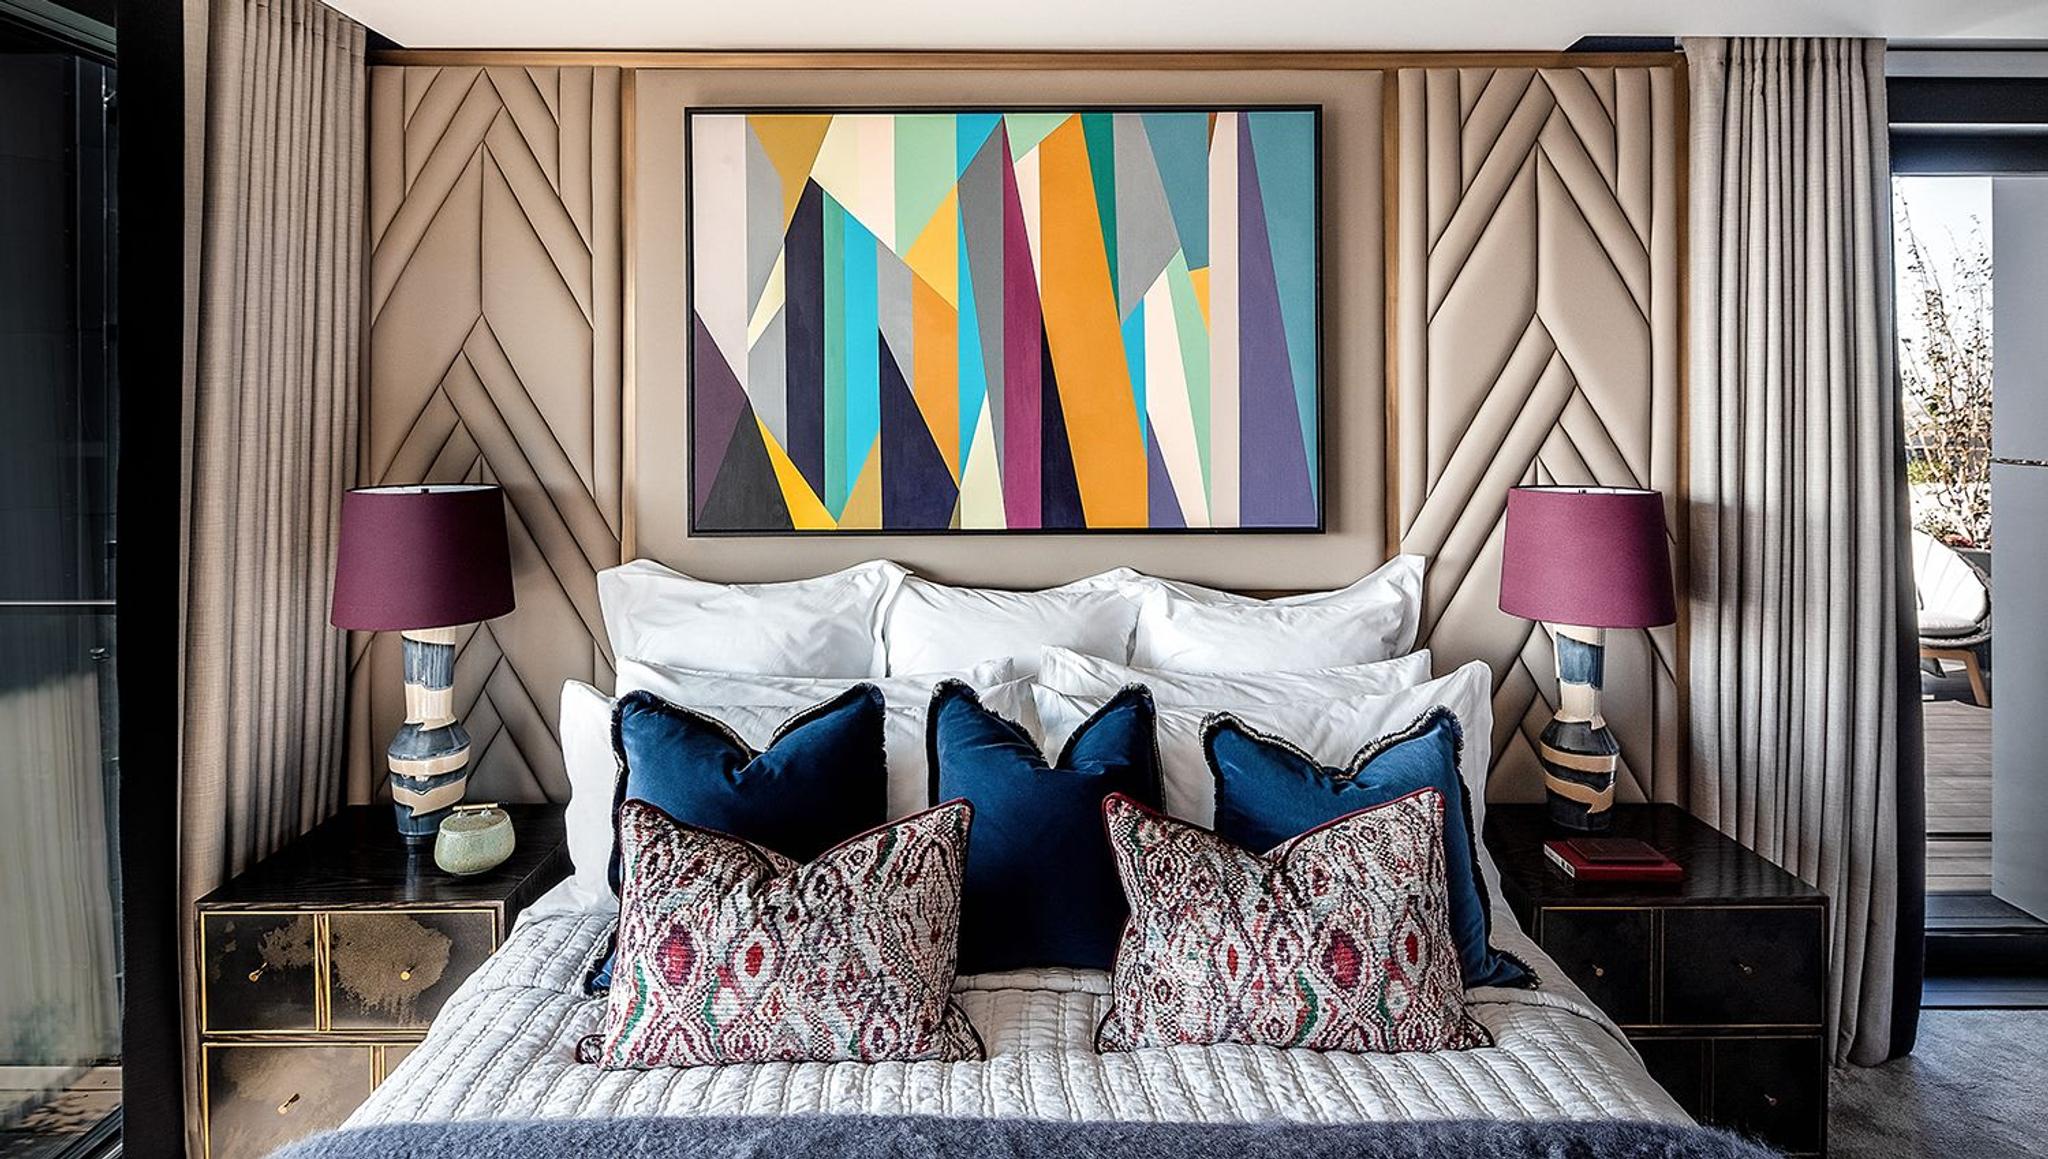 La chambre Dumont, la chambre bleue : couleurs, textures et motifs s'épanouissent dans la chambre d'amis